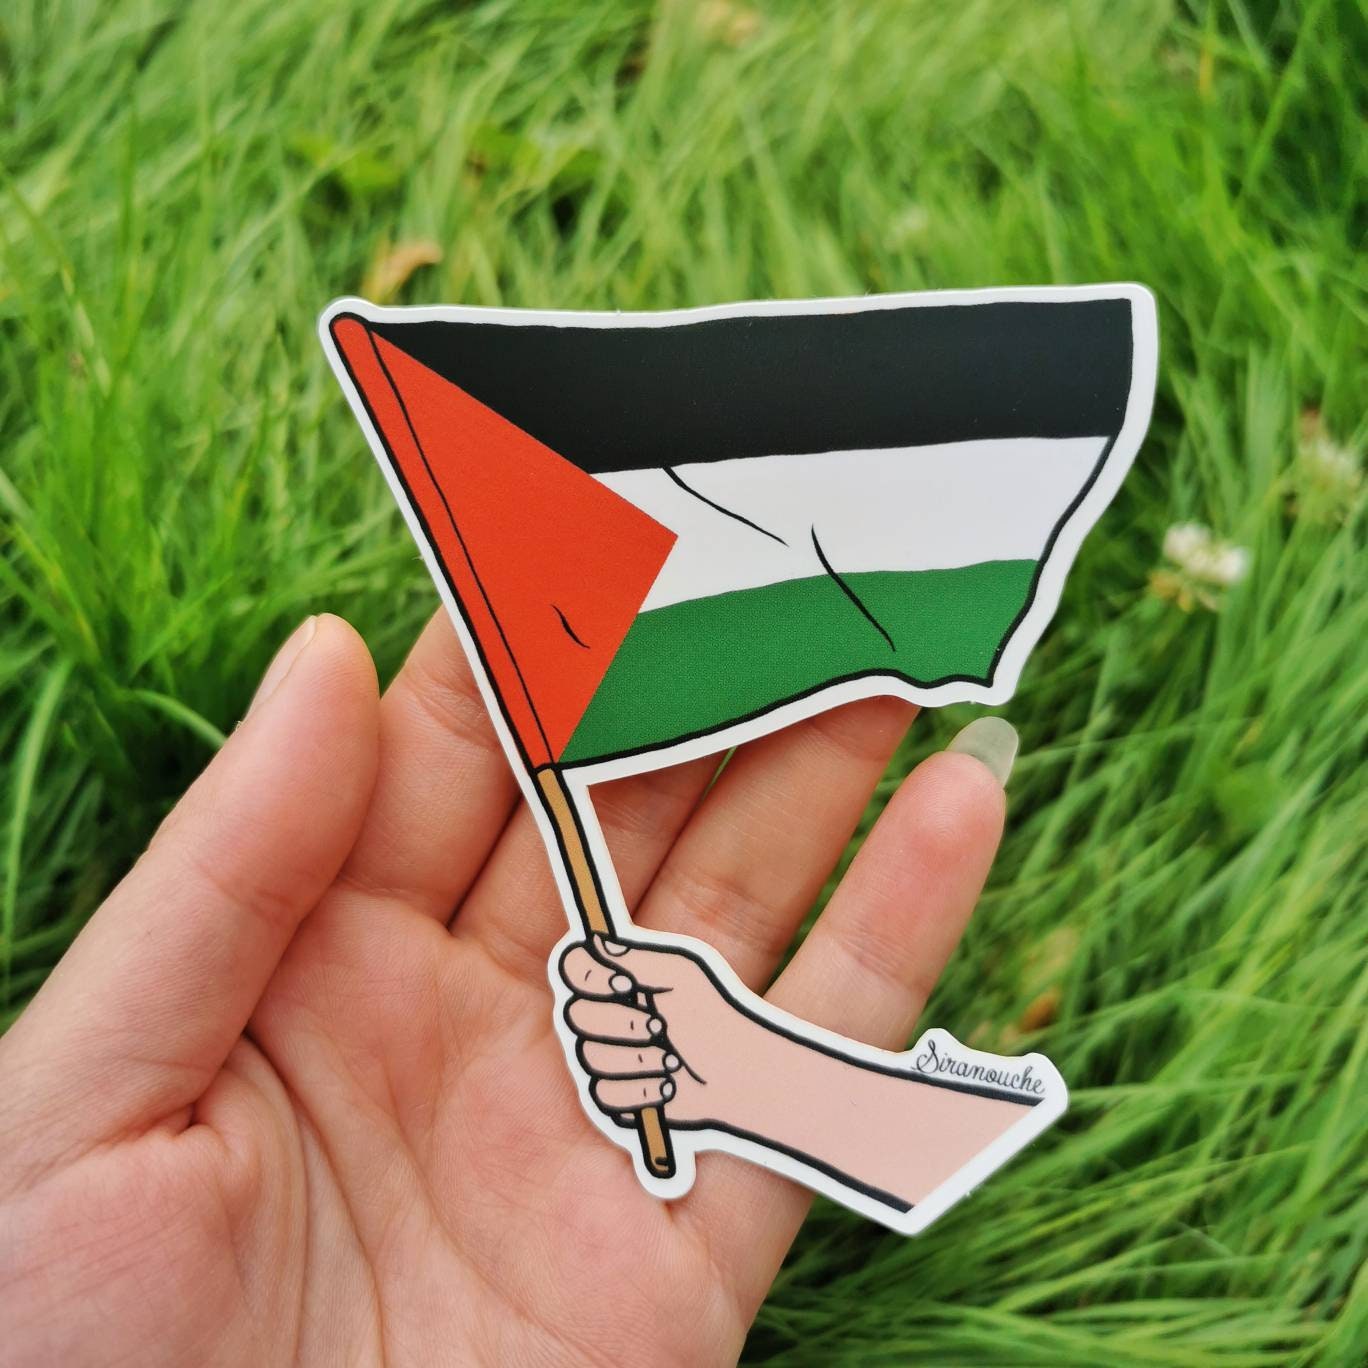 Autocollant Palestine - La Boutique de la Paix